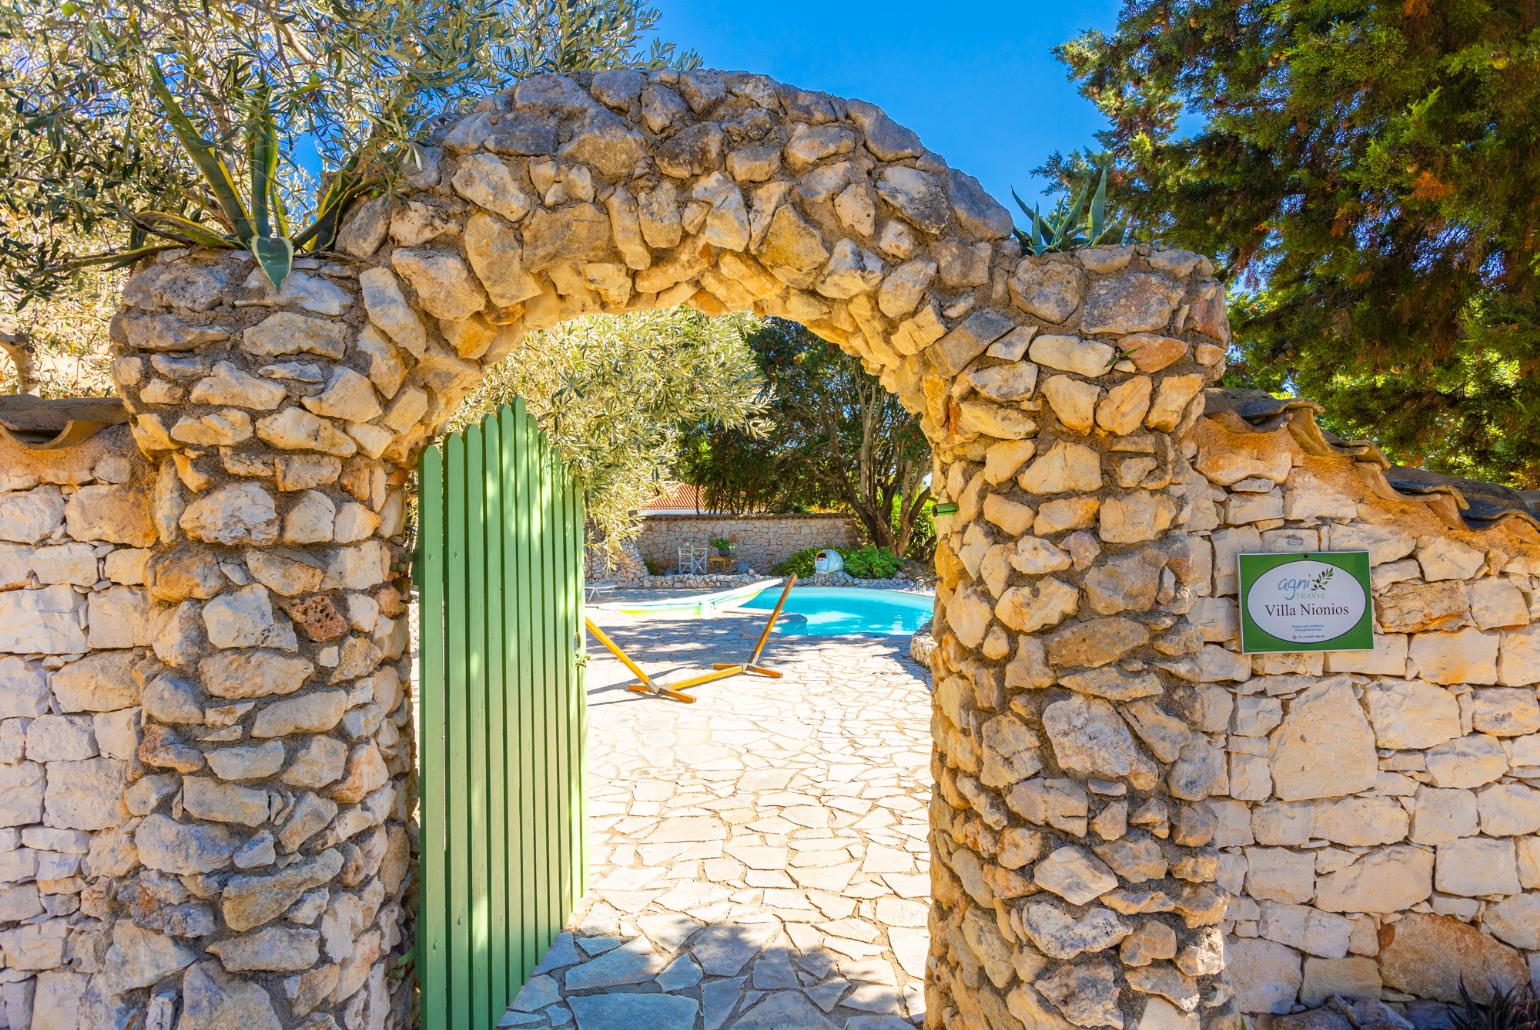 Entrance to Villa Nionios